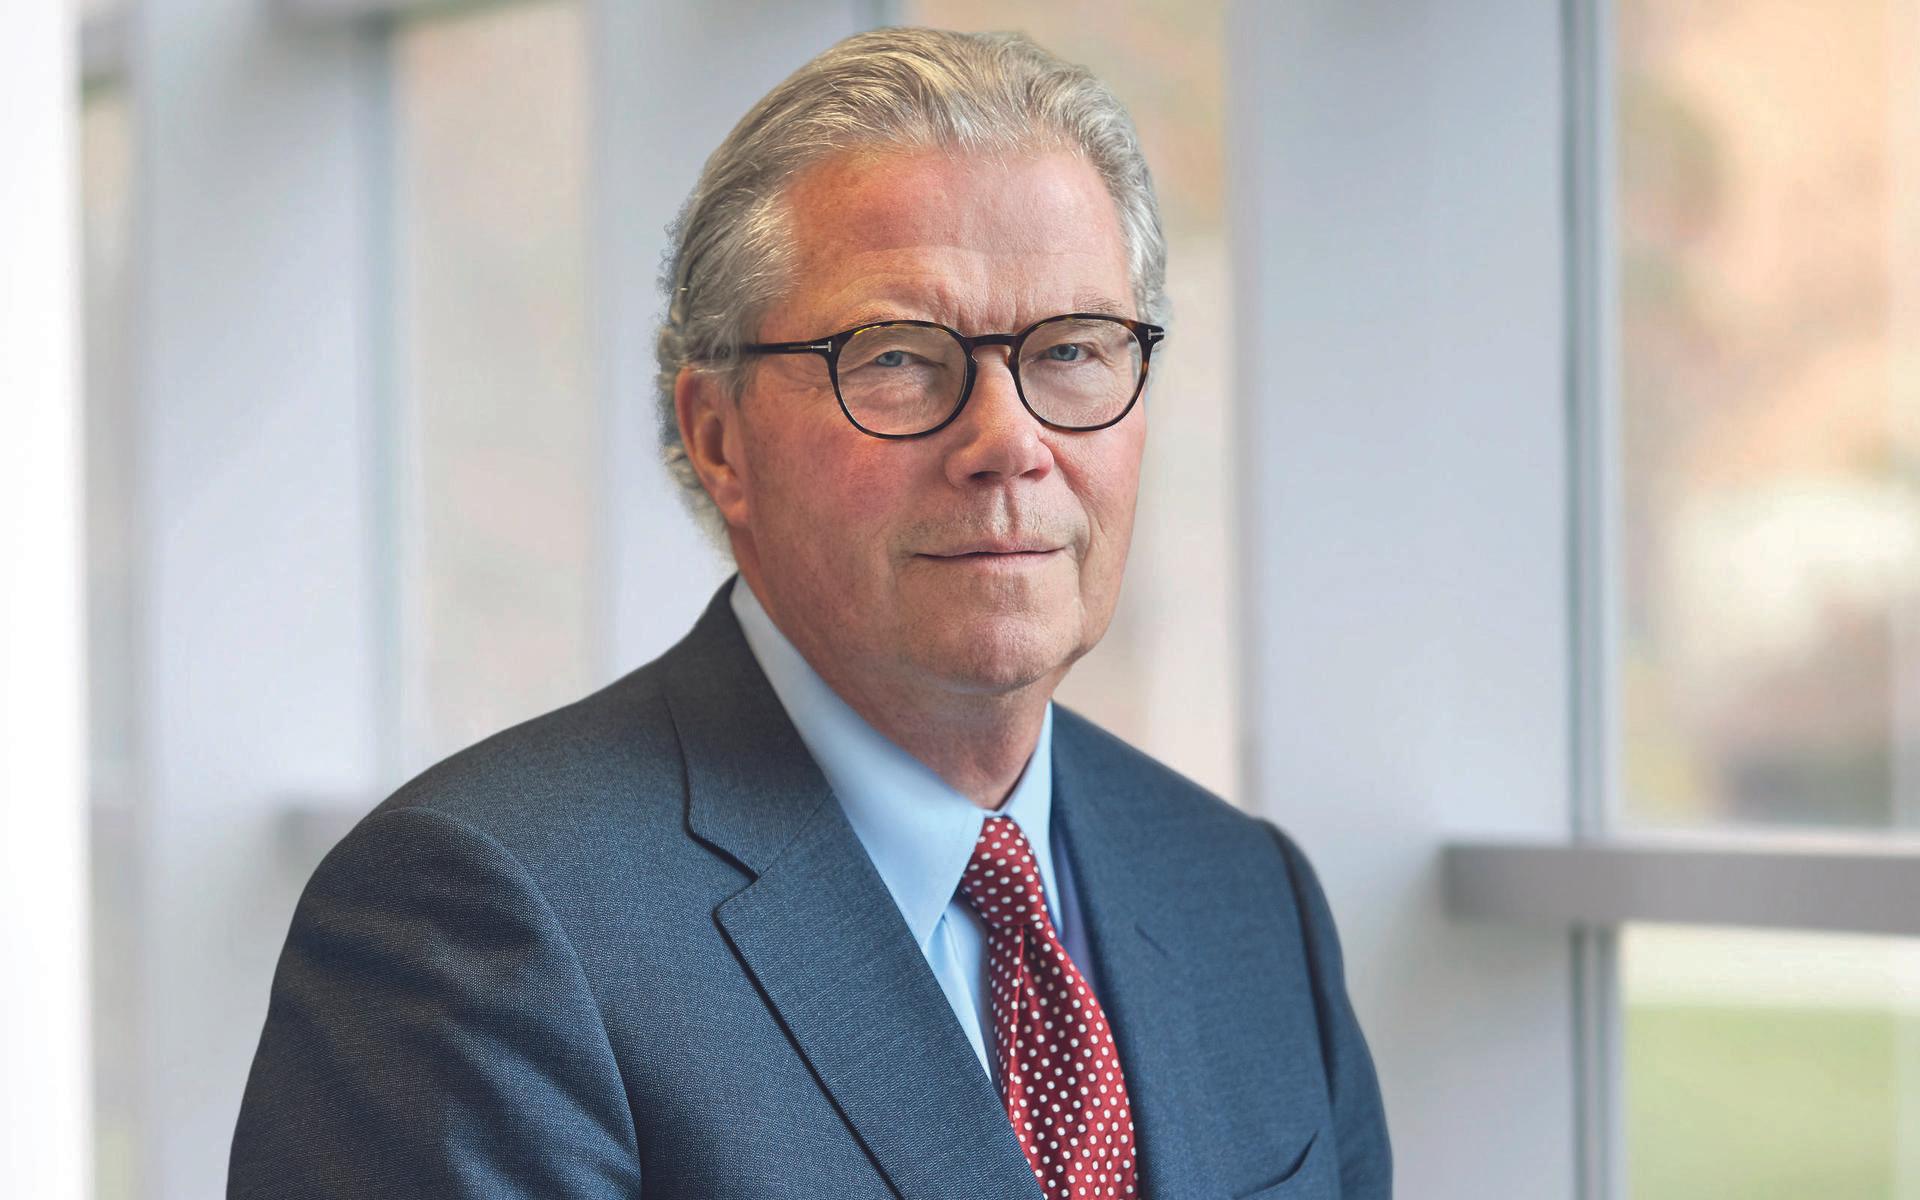 Leif Johansson är styrelseordförande för det svensk-brittiska läkemedelsbolaget Astra Zeneca. Tidigare har han bland annat varit vd och koncernchef för AB Volvo samt styrelseordförande för Ericson.